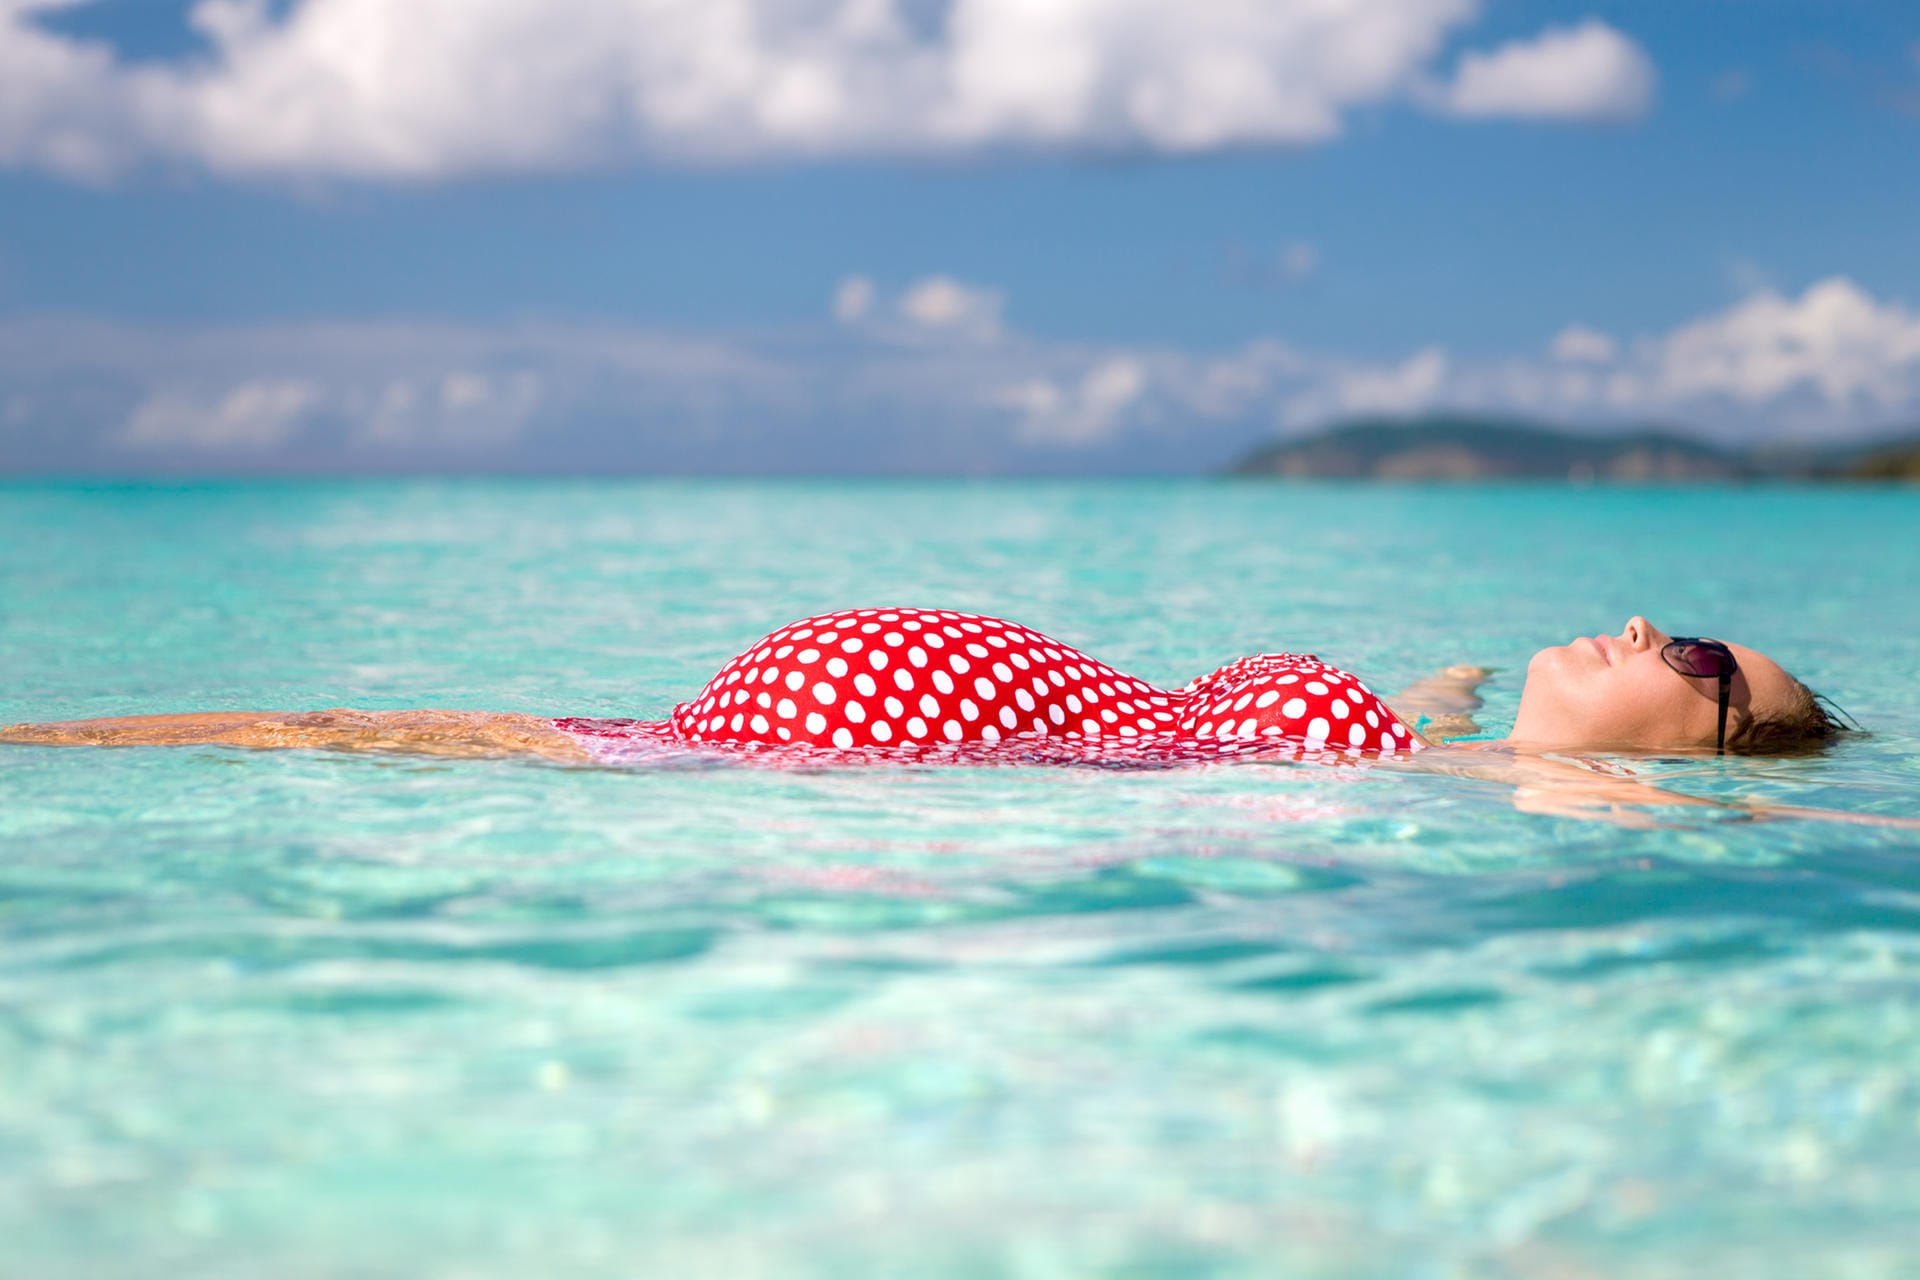 Denken Sie bei einem Strandurlaub unbedingt an den passenden Sonnenschutz, denn Ihre Haut reagiert in der Schwangerschaft empfindlicher. Sonnenschutzmittel mit hohem UV-Schutz ist in der Schwangerschaft am besten. Nehmen Sie sich auch einen Sonnenhut mit an den Strand.